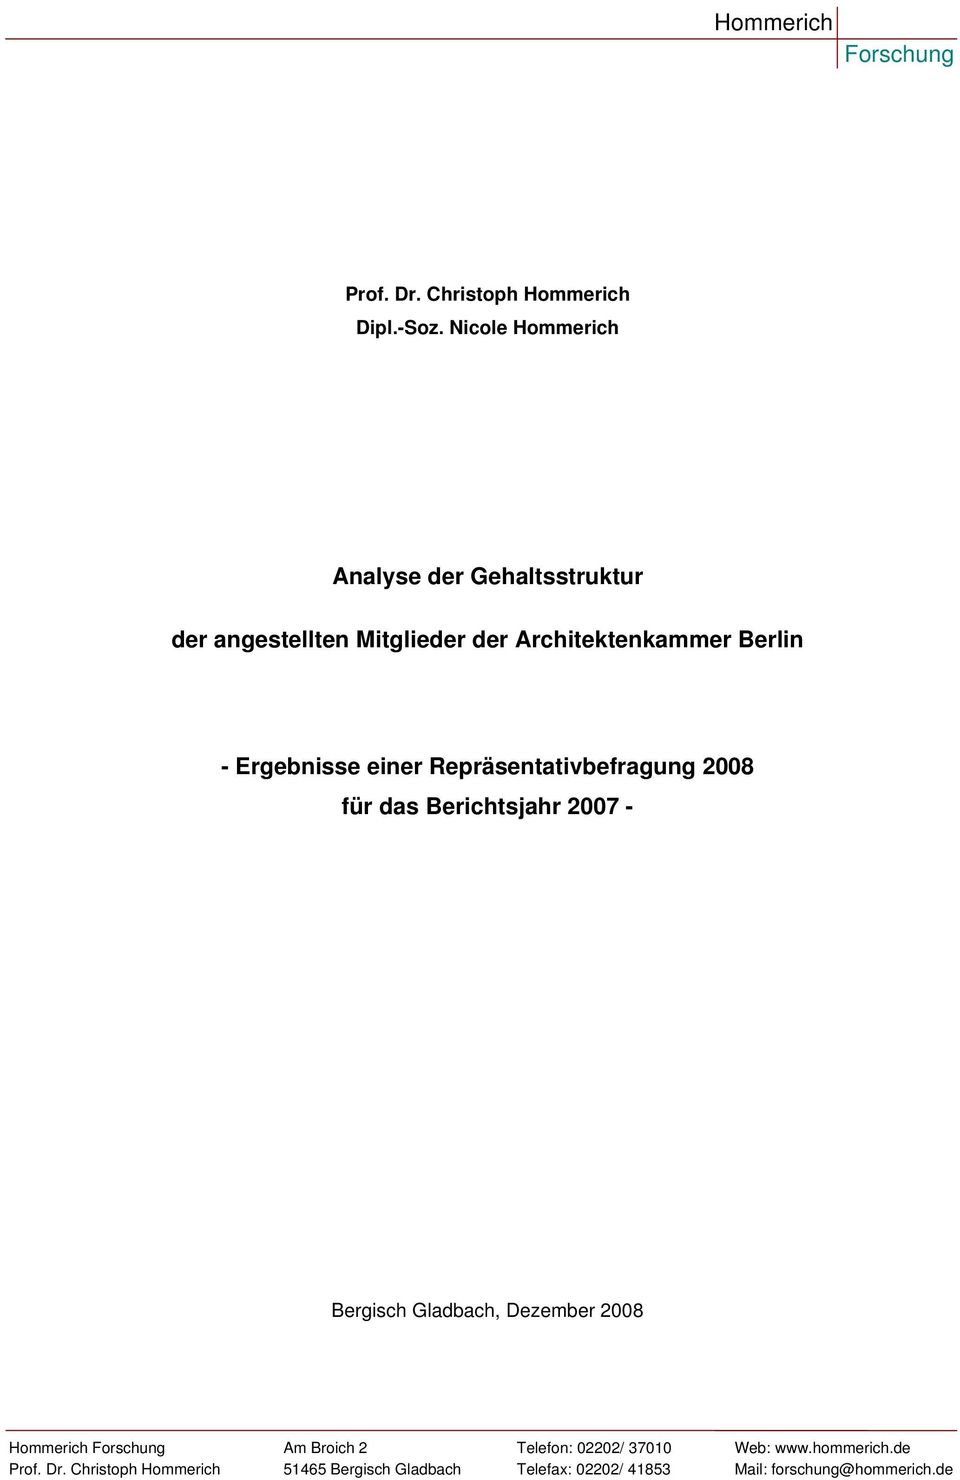 Ergebnisse einer Repräsentativbefragung 2008 für das Berichtsjahr 2007 - Bergisch Gladbach, Dezember 2008